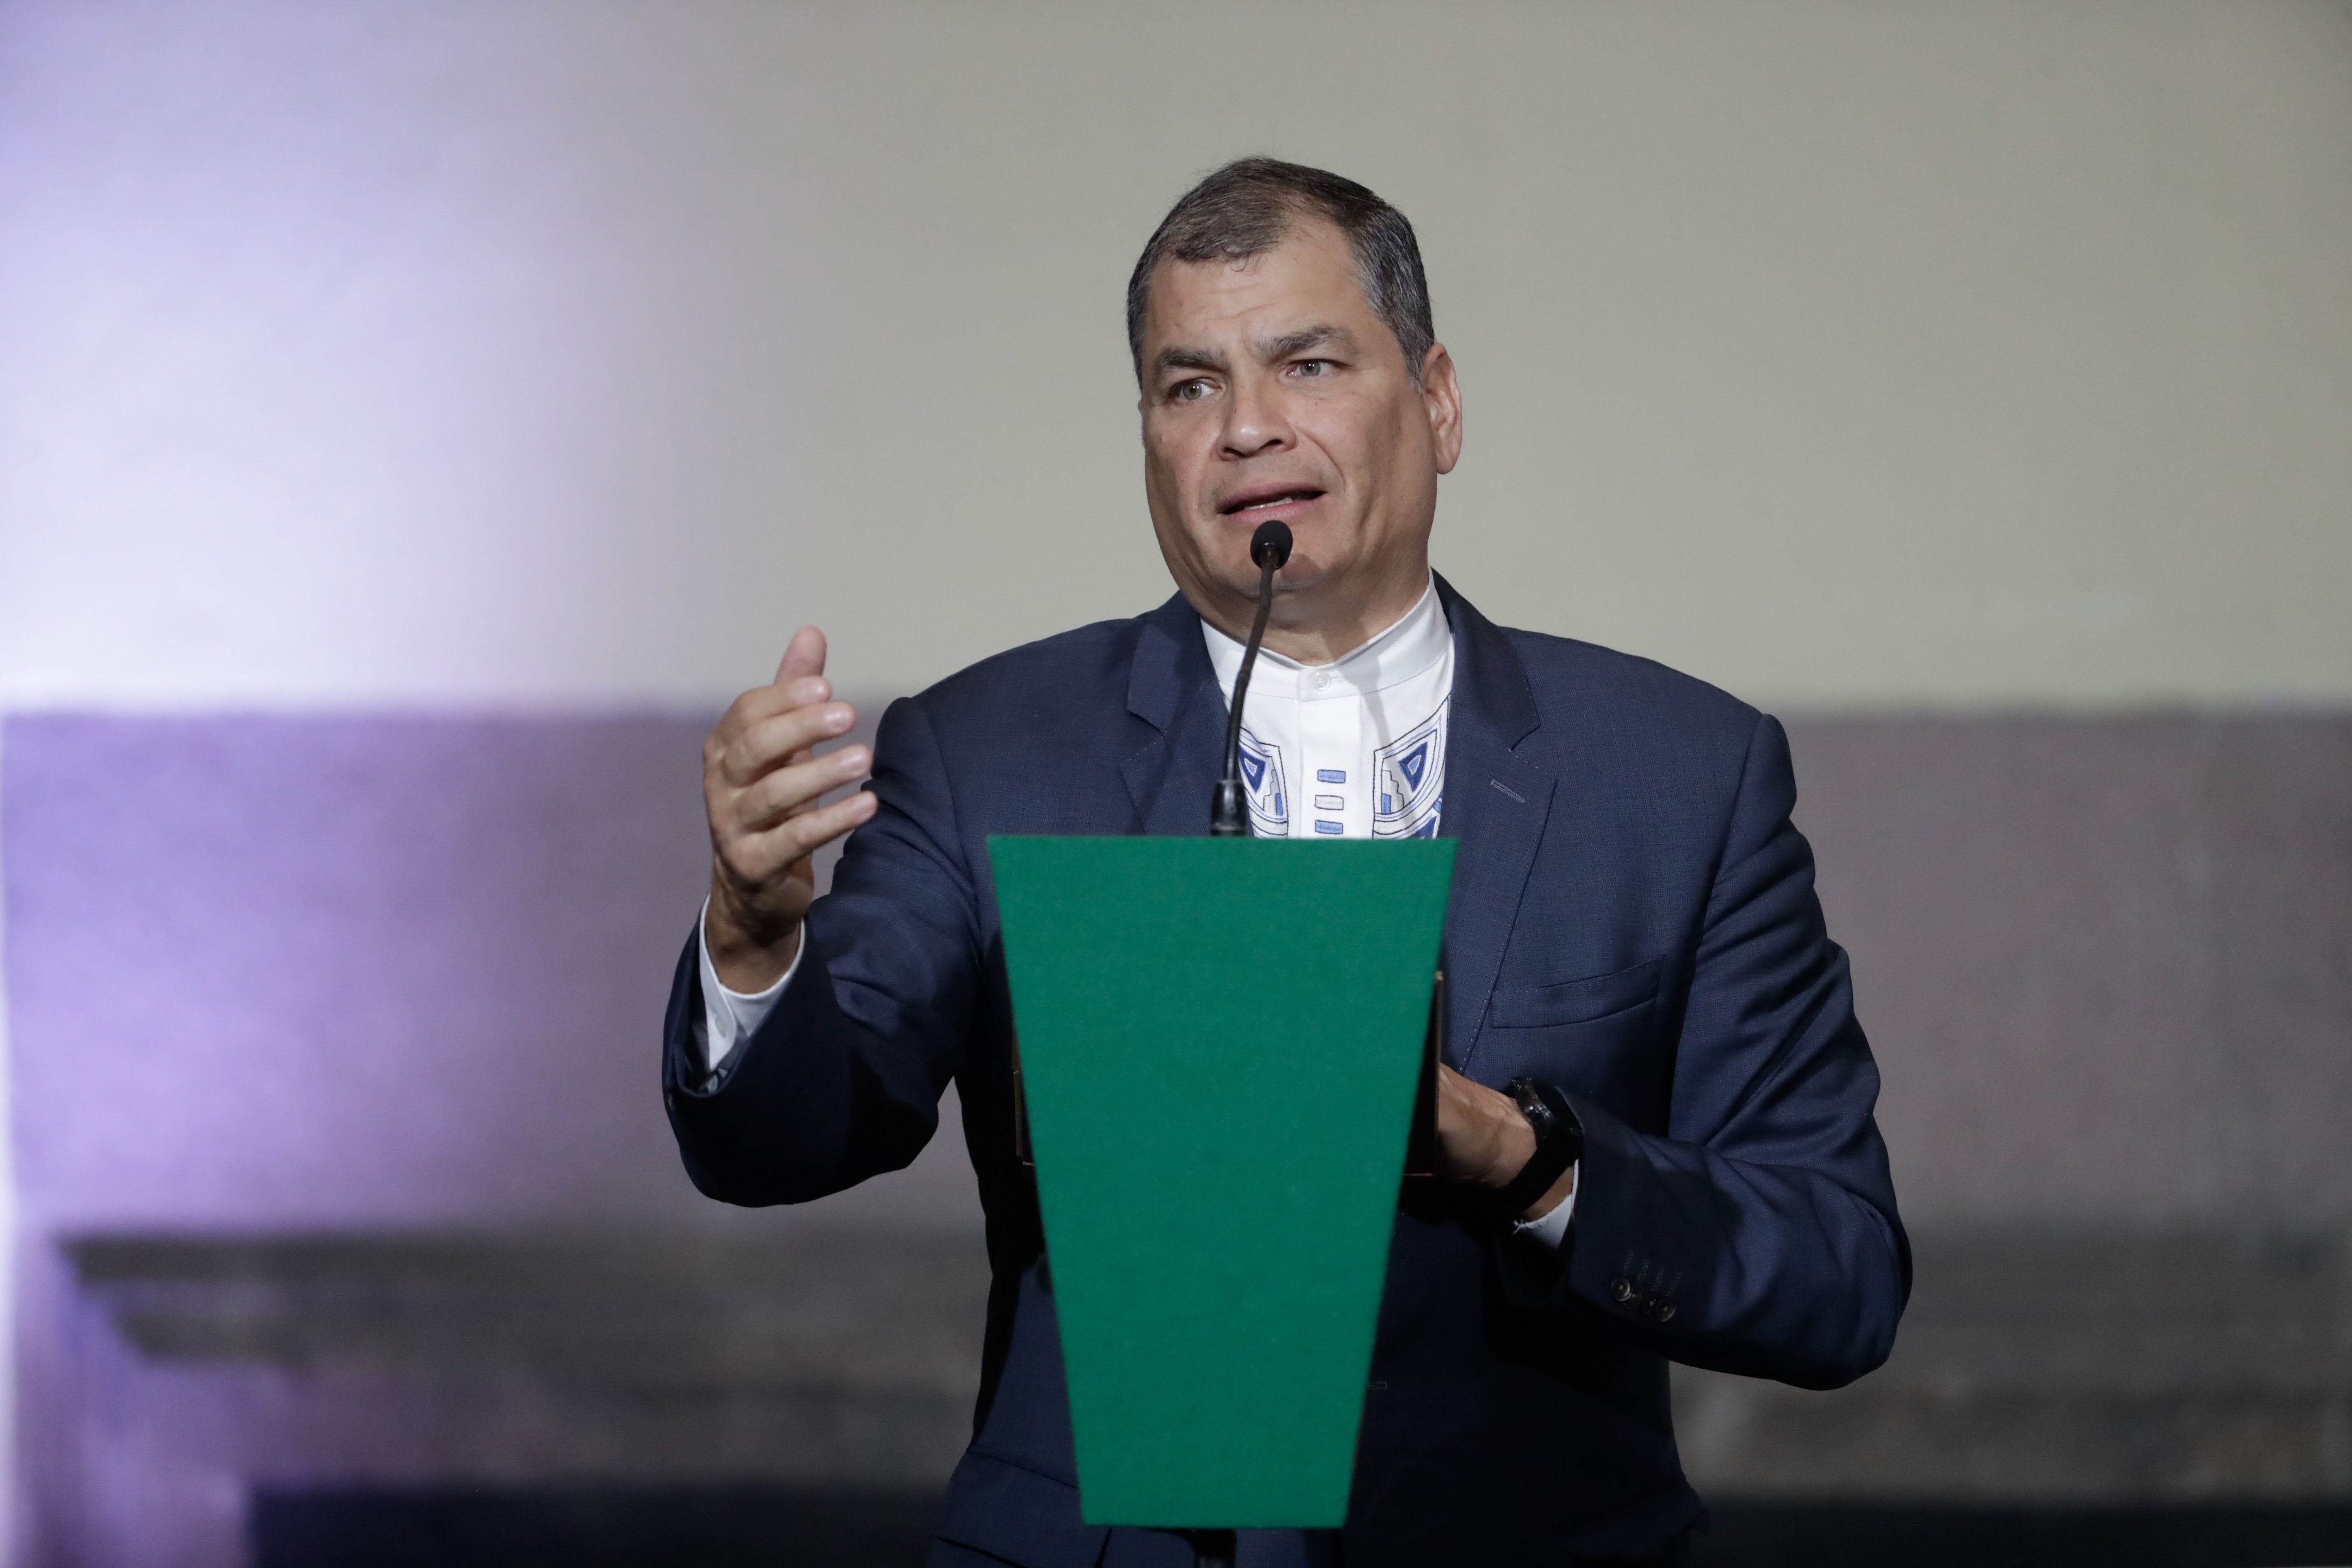 El ex presidente ecuatoriano Rafael Correa. Los altos funcionarios presionaron para avanzar con la construcción del proyecto porque “un nuevo estudio habría tomado varios años” y no querían retrasarlo.
(EL UNIVERSAL / ZUMA PRESS / CONTACTOPHOTO)
